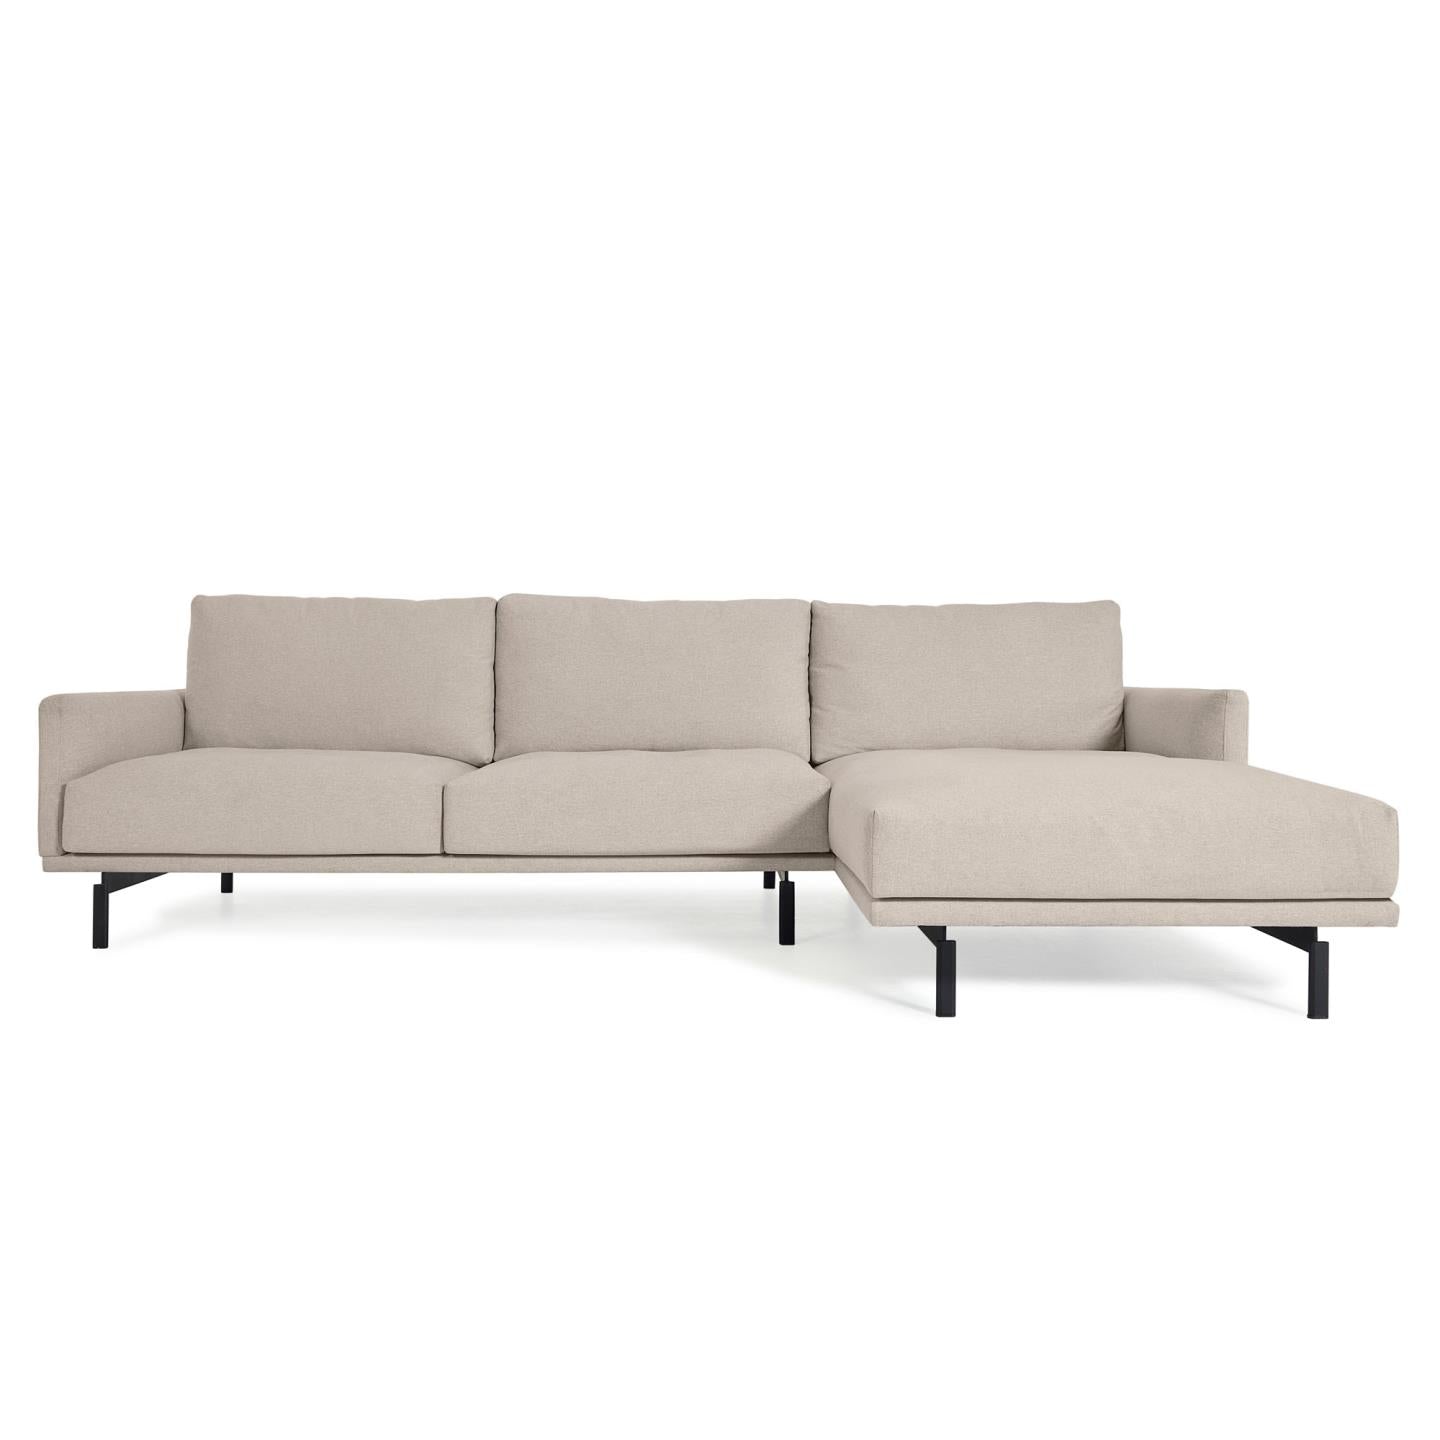 Galene 3 személyes kanapé jobb oldali fekvőfotellel, bézs színben, 254 cm